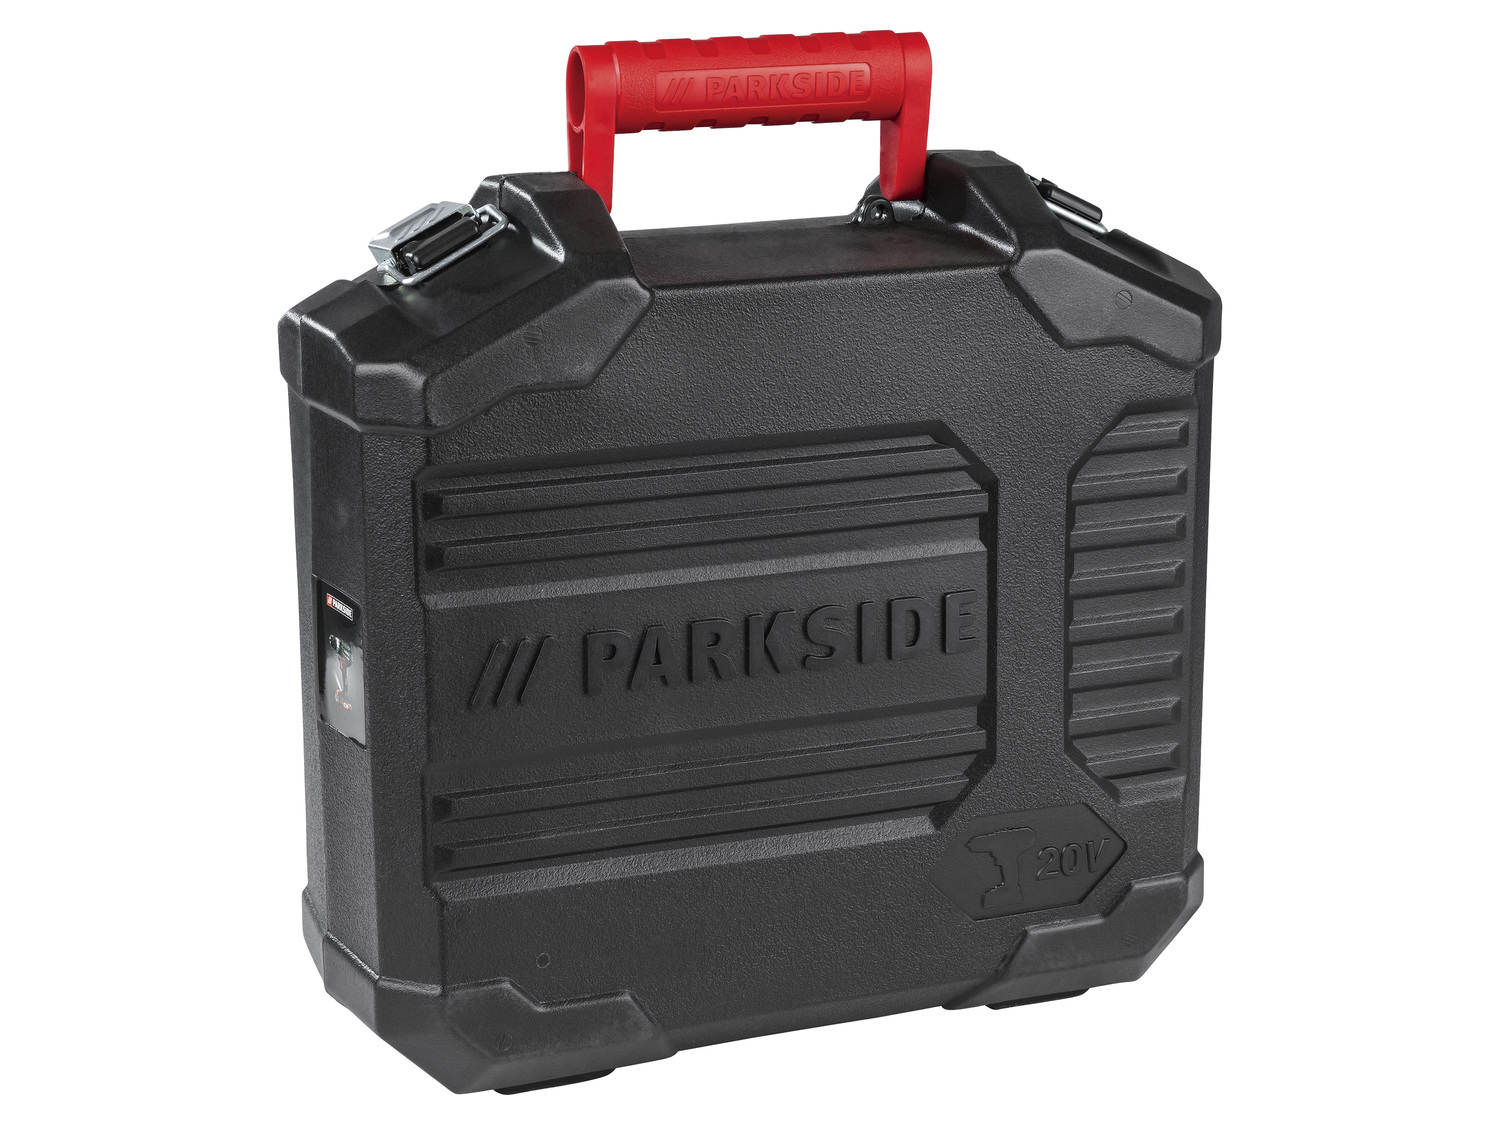 Akumulatorowa wiertarkowkrętarka 20 V Parkside, cena 179,00 PLN 
- mocowanie do ...